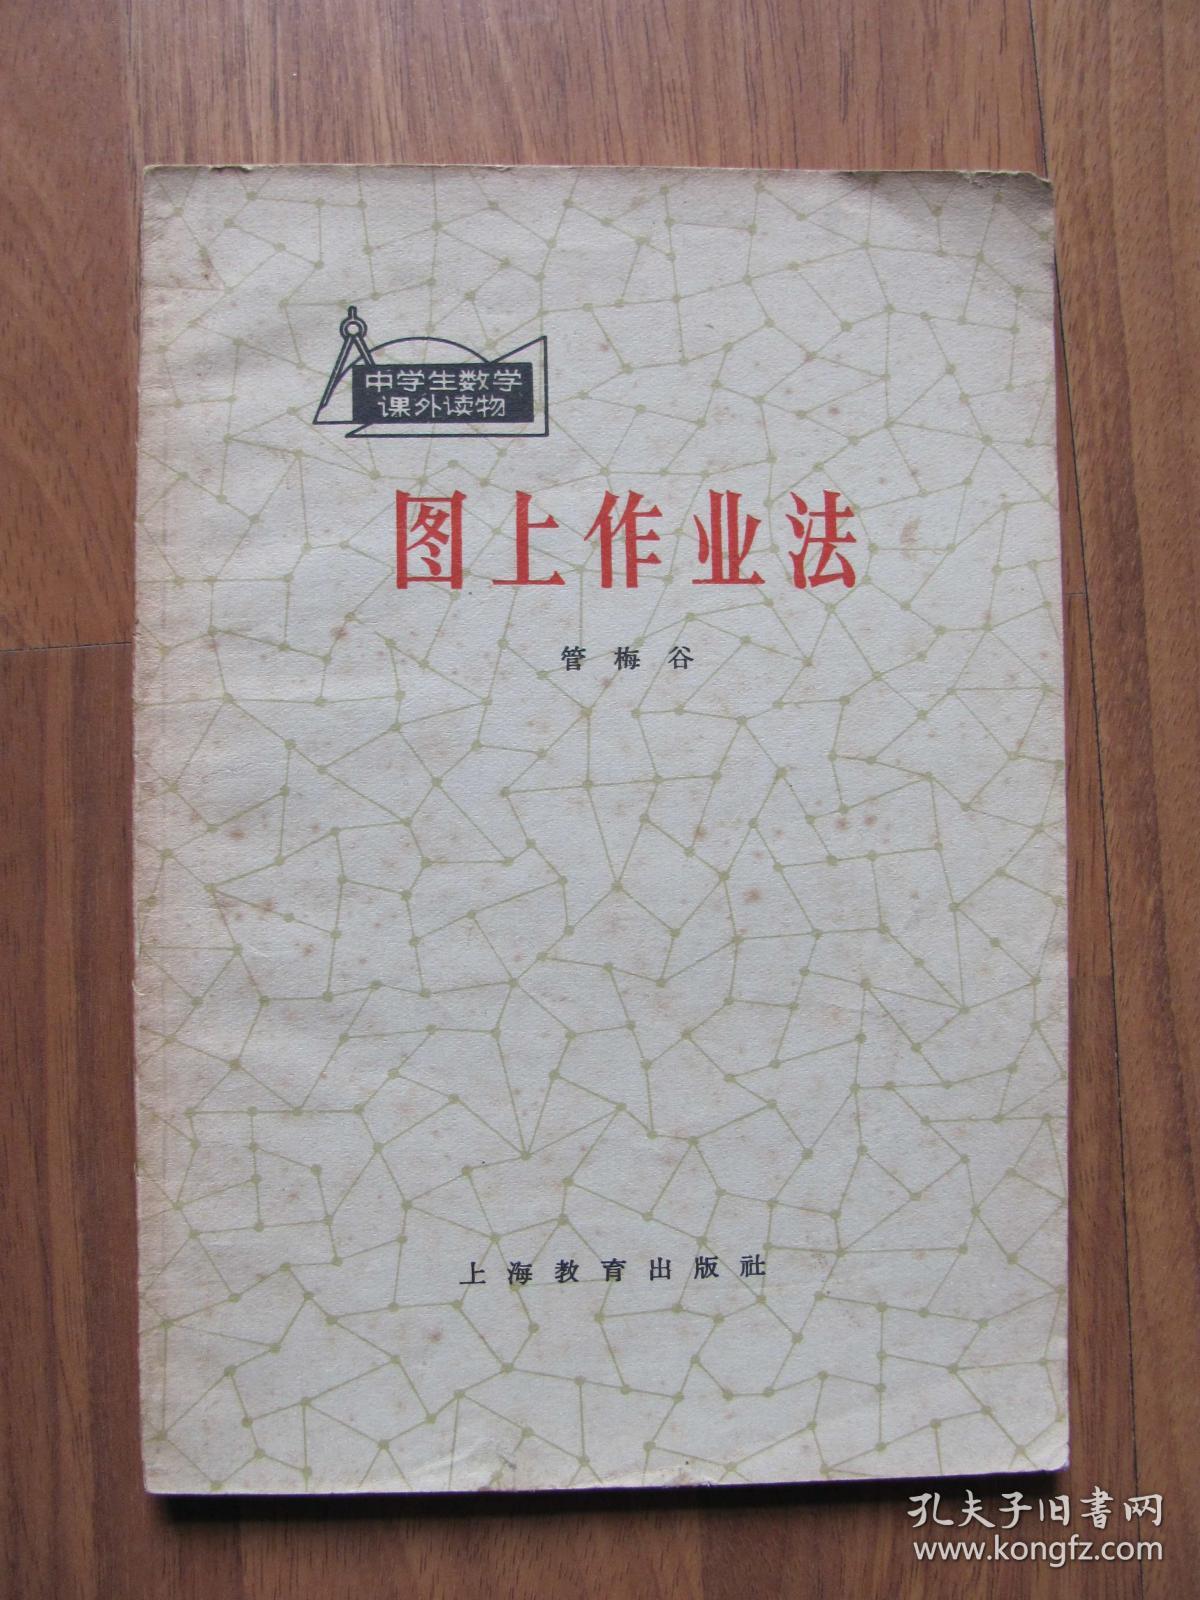 1965年 老版《图上作业法》（中学生数学课外读物）